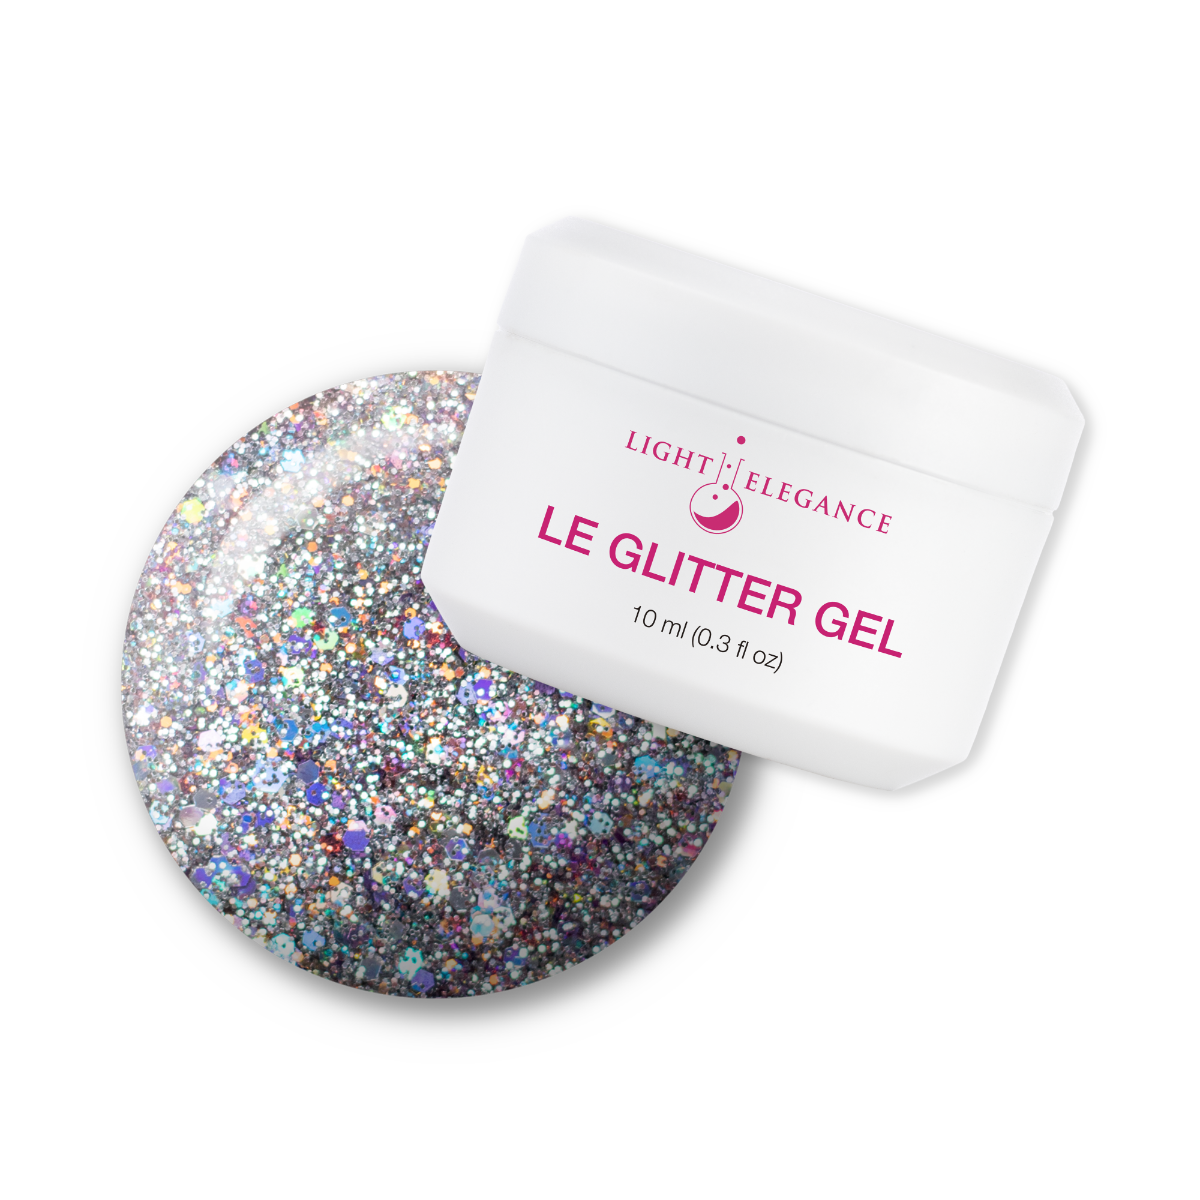 Light Elegance Glitter Gel - The Elvis Pelvis :: New Packaging